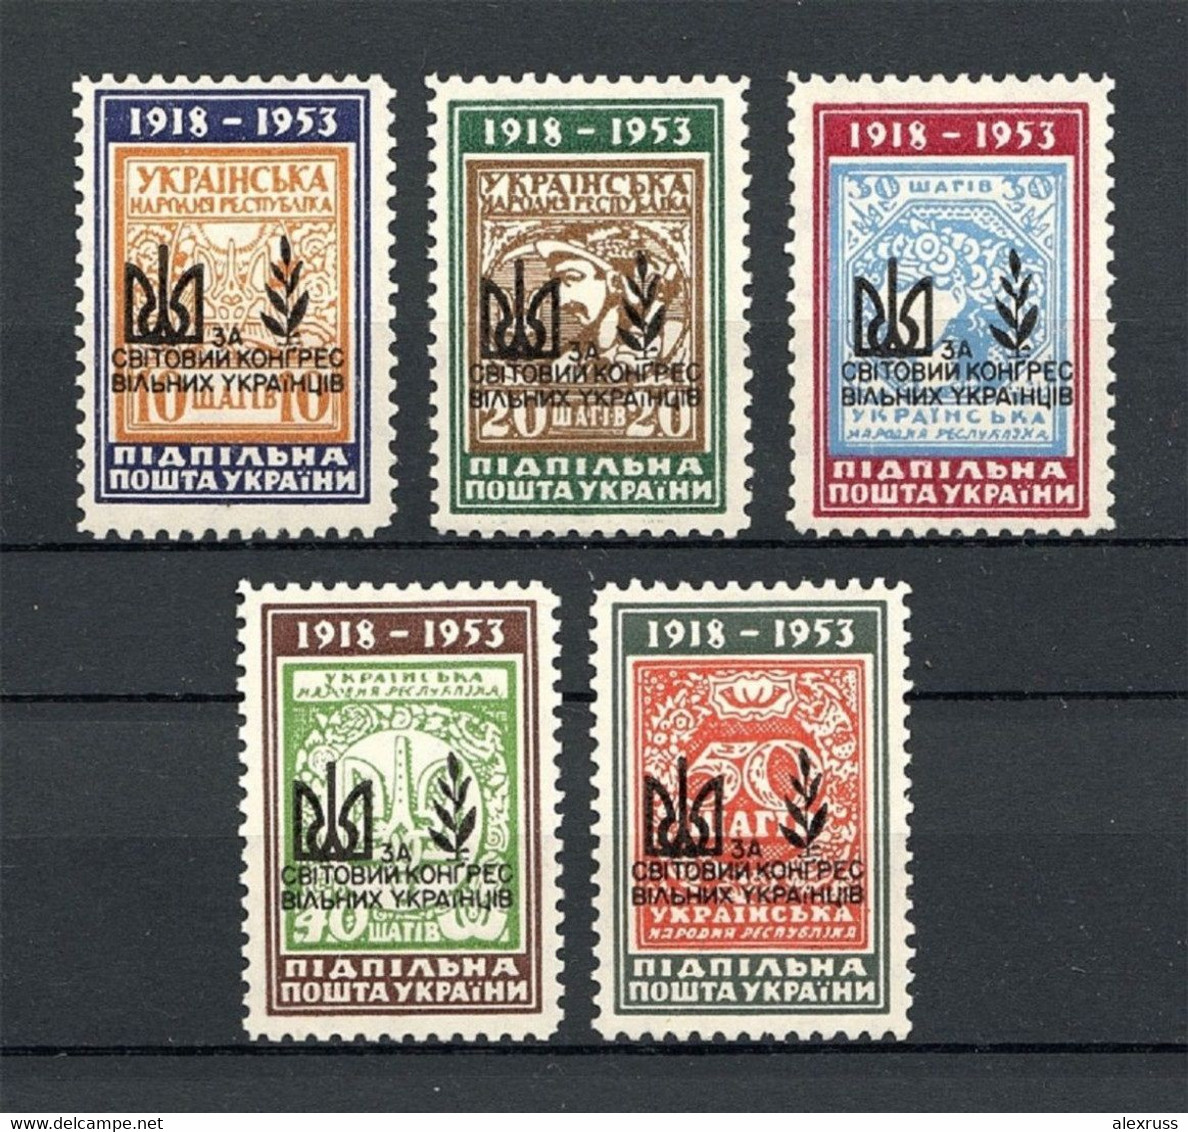 Ukraine 1959 Ukrainian World Congress, Underground Post, Only 720 Issued, Full Set,VF MNH** - Ukraine & Westukraine